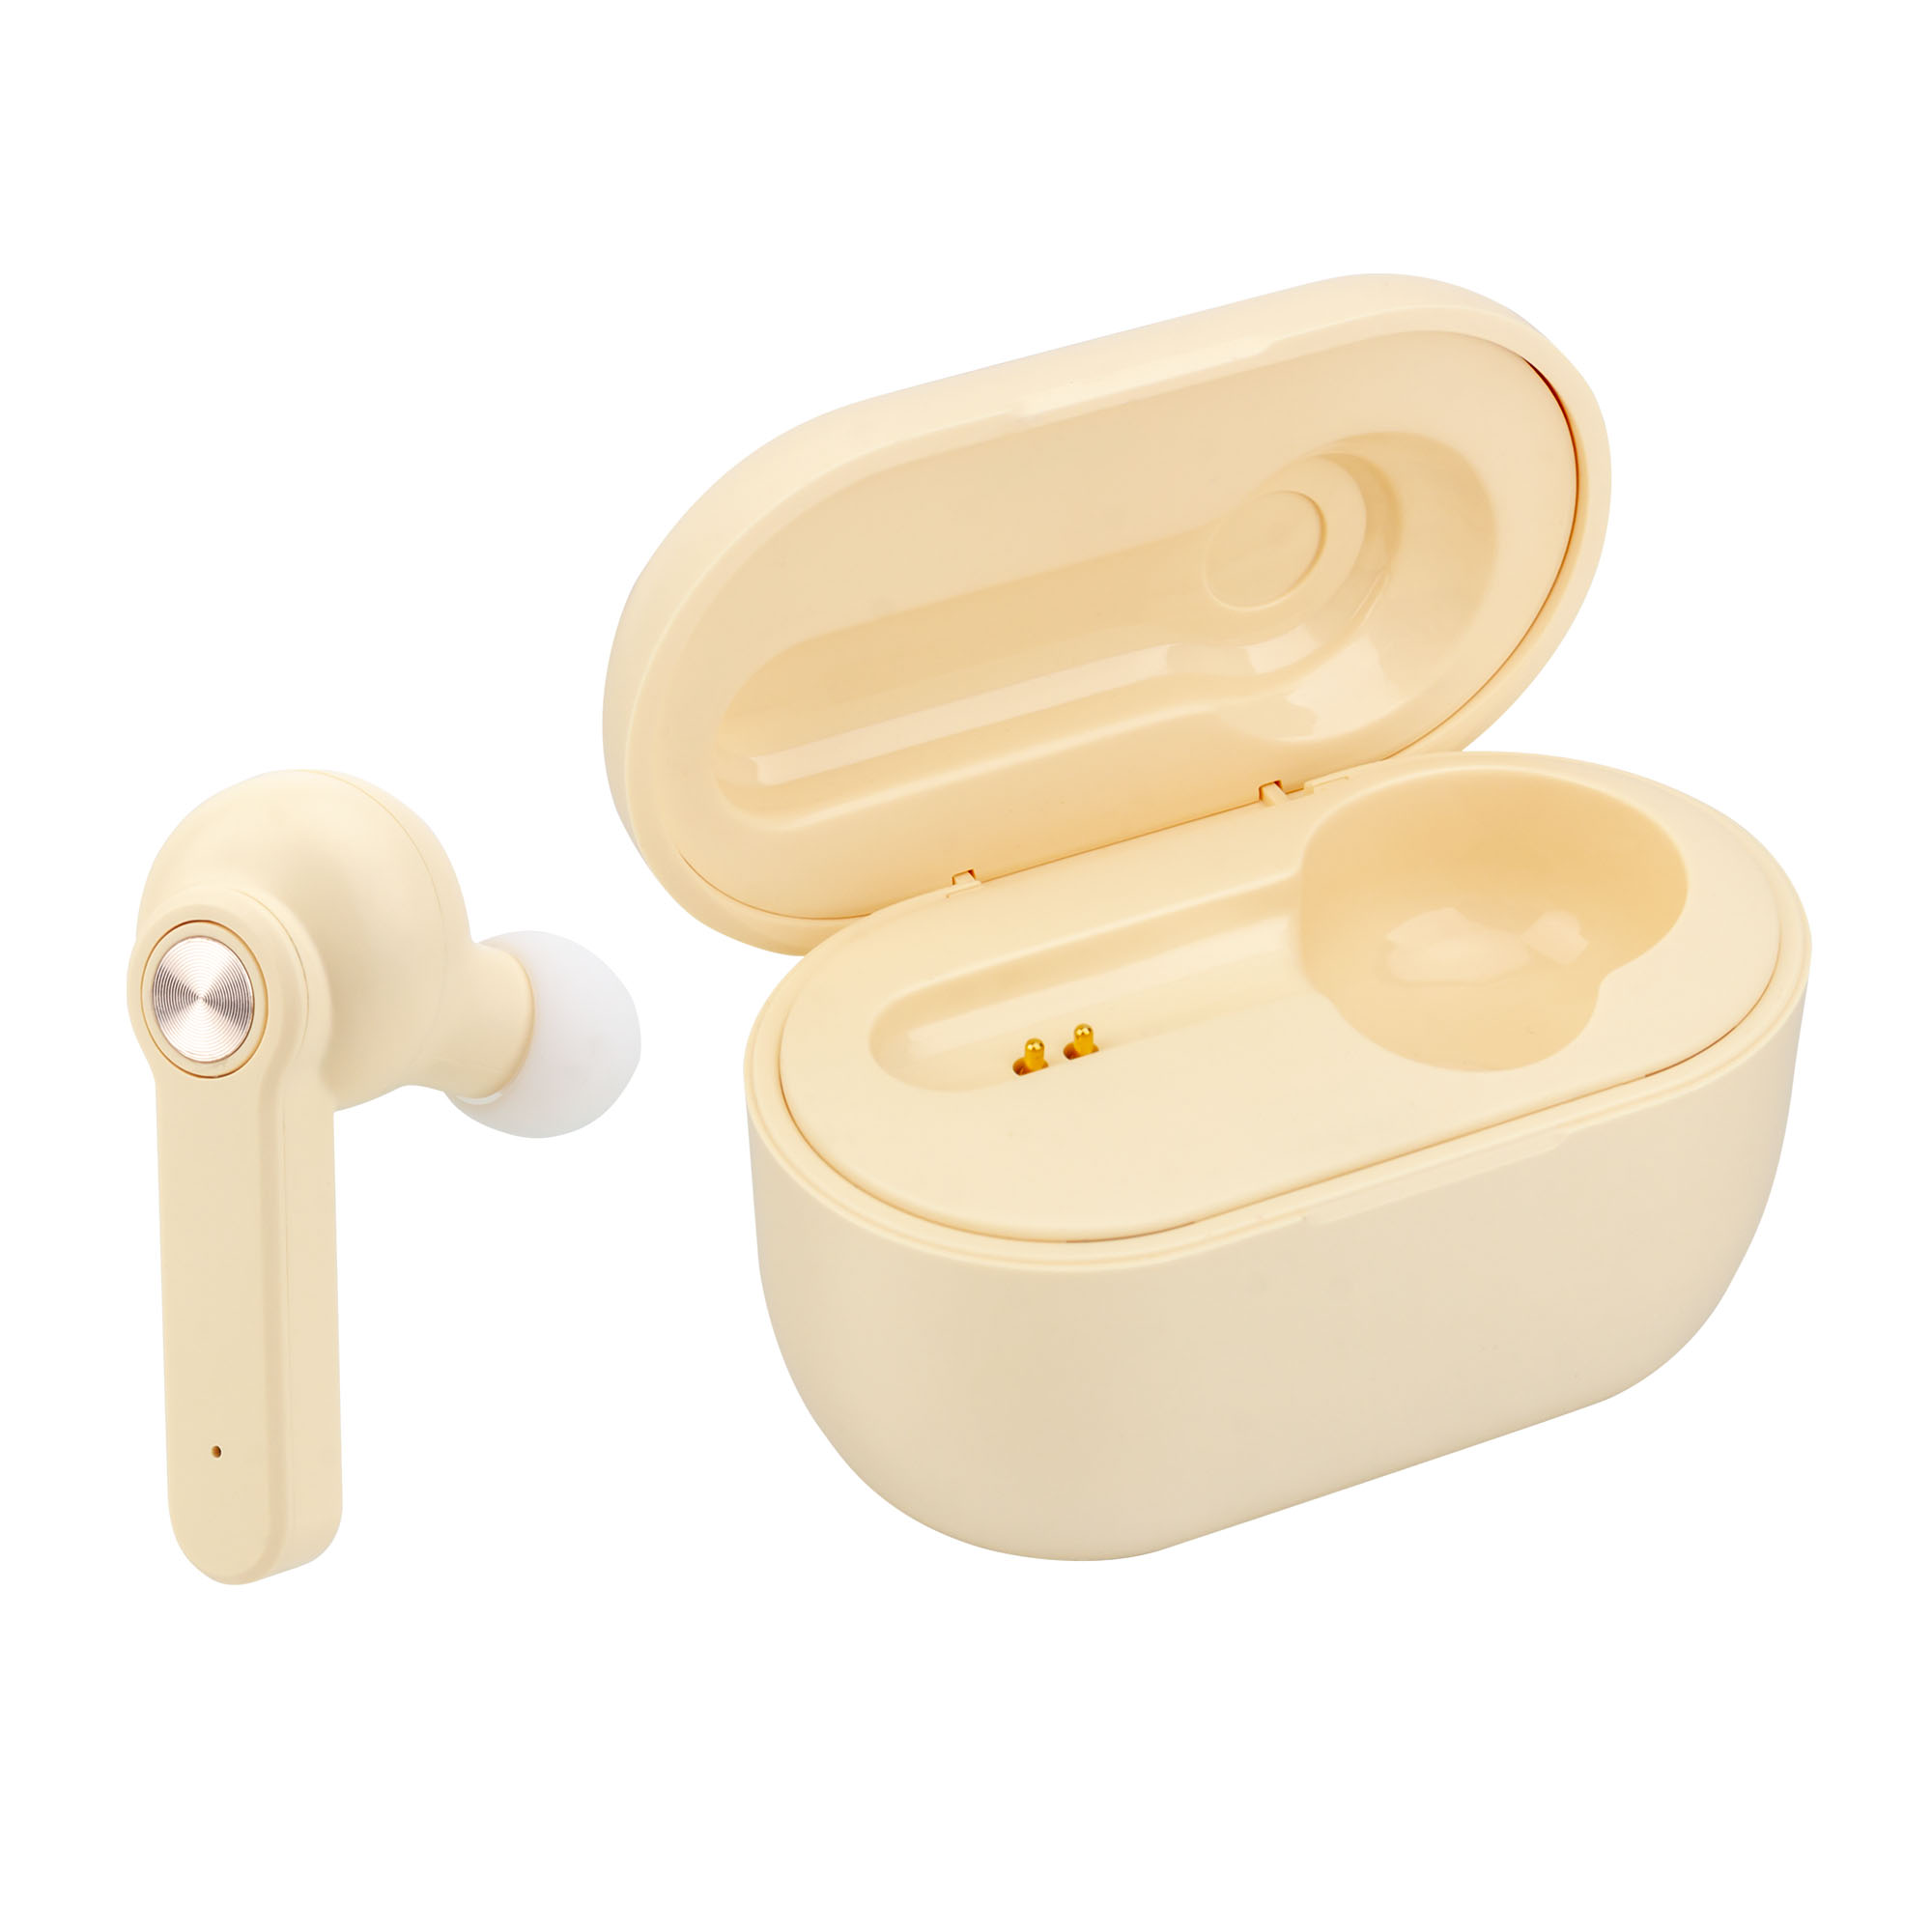 Kingstar TWS Earbuds truely bluetooth 5.0 wireless single mini single earbuds 